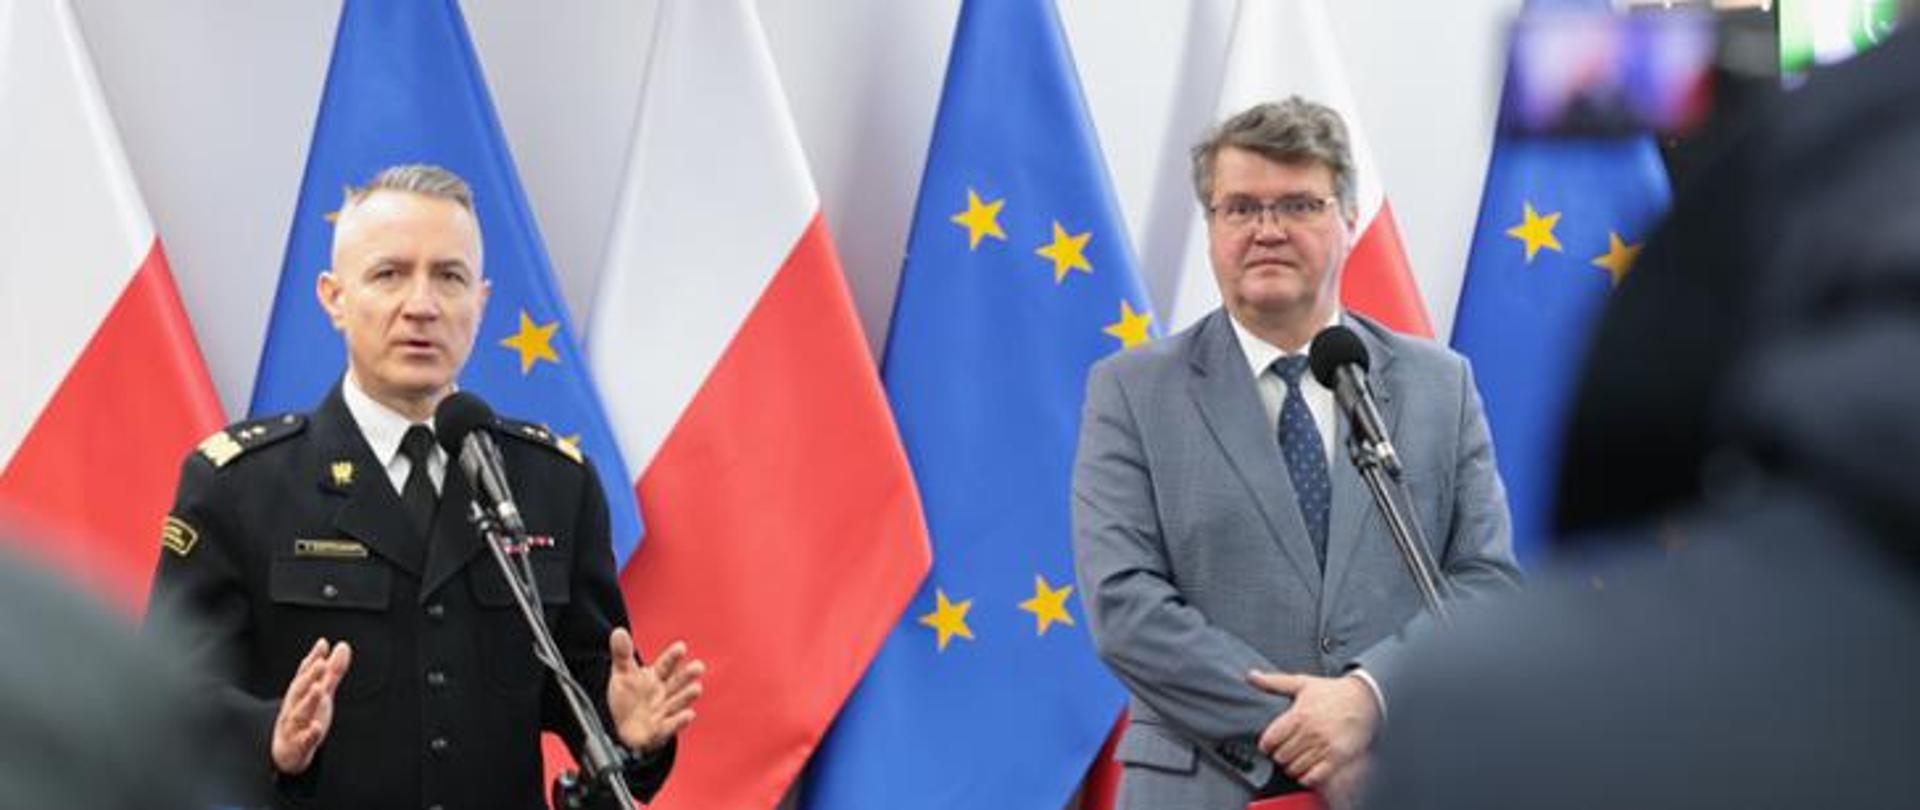 Na tle flag polski i UE stoi dwóch mężczyzn. Jeden z nich jest w strażackim mundurze galowym.